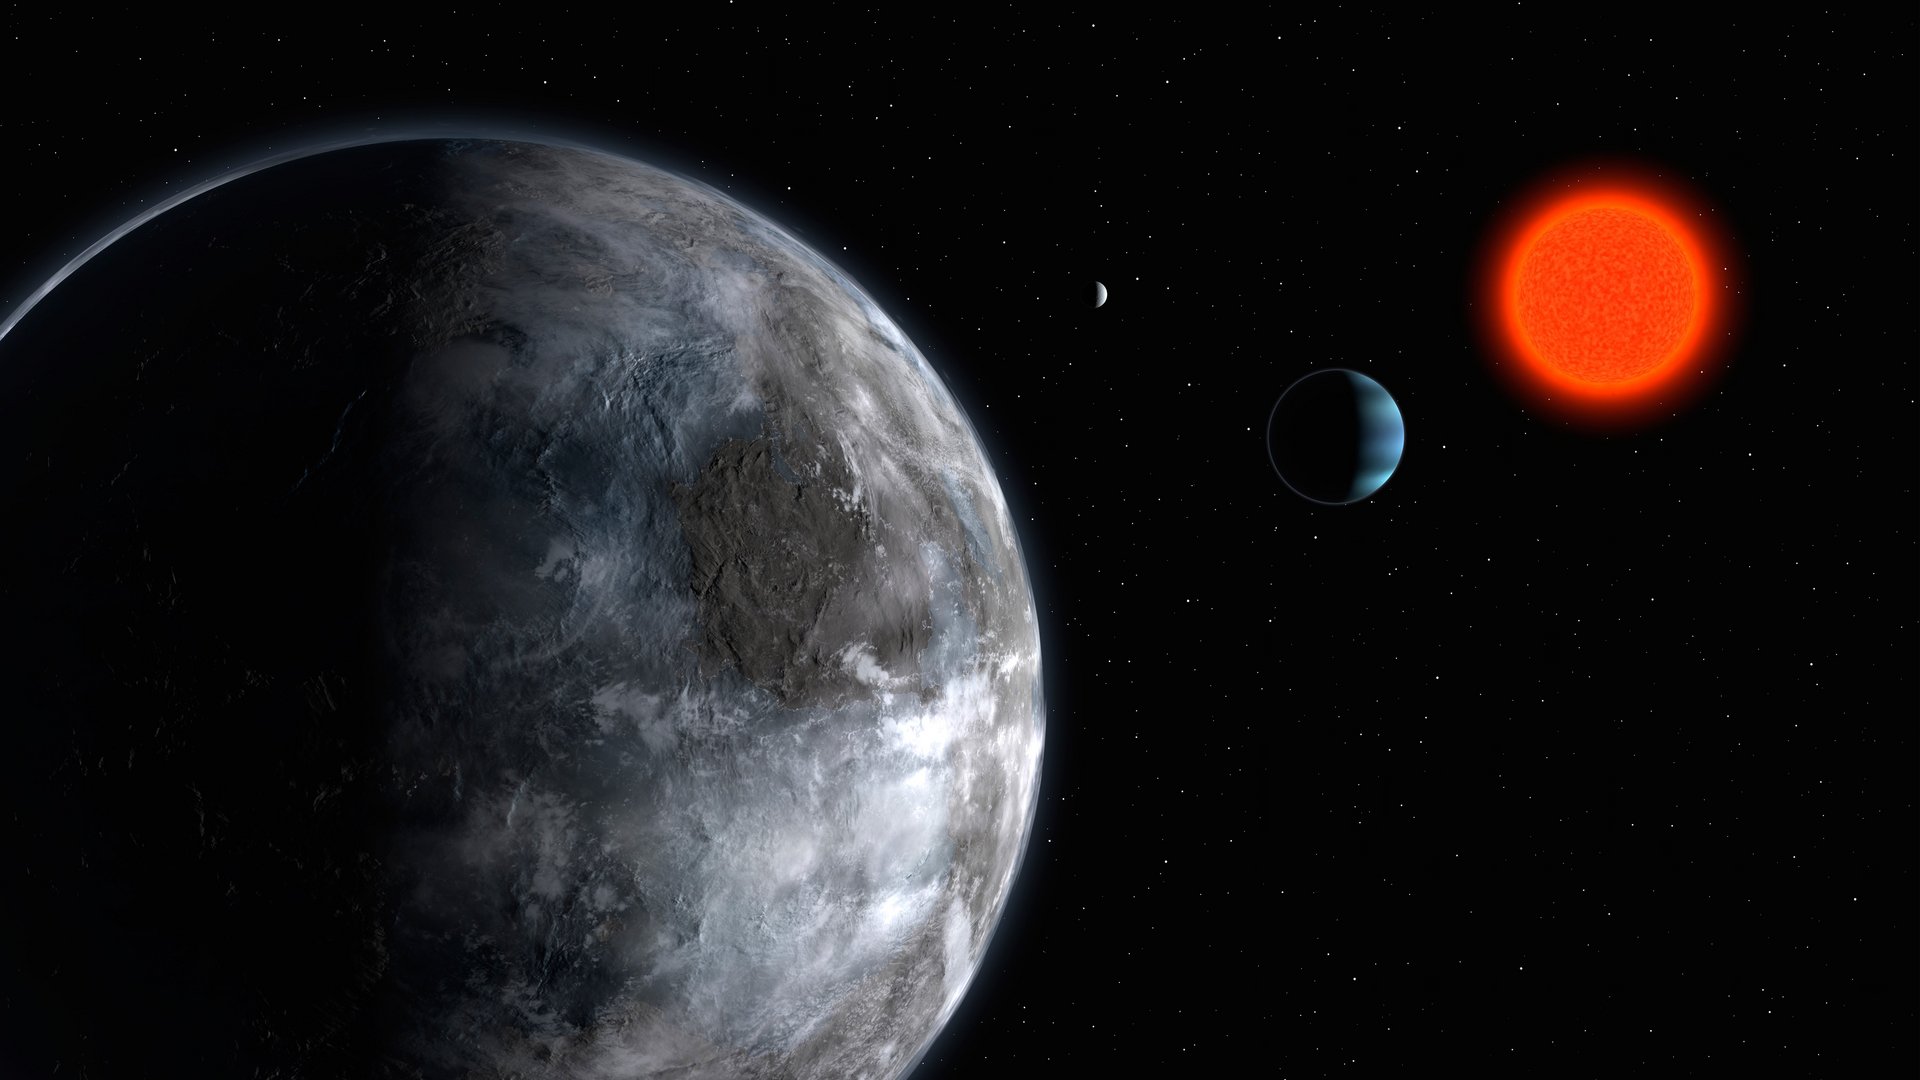 Der Exoplanet Gliese 581 umkreist einen rot leuchtenden Stern.